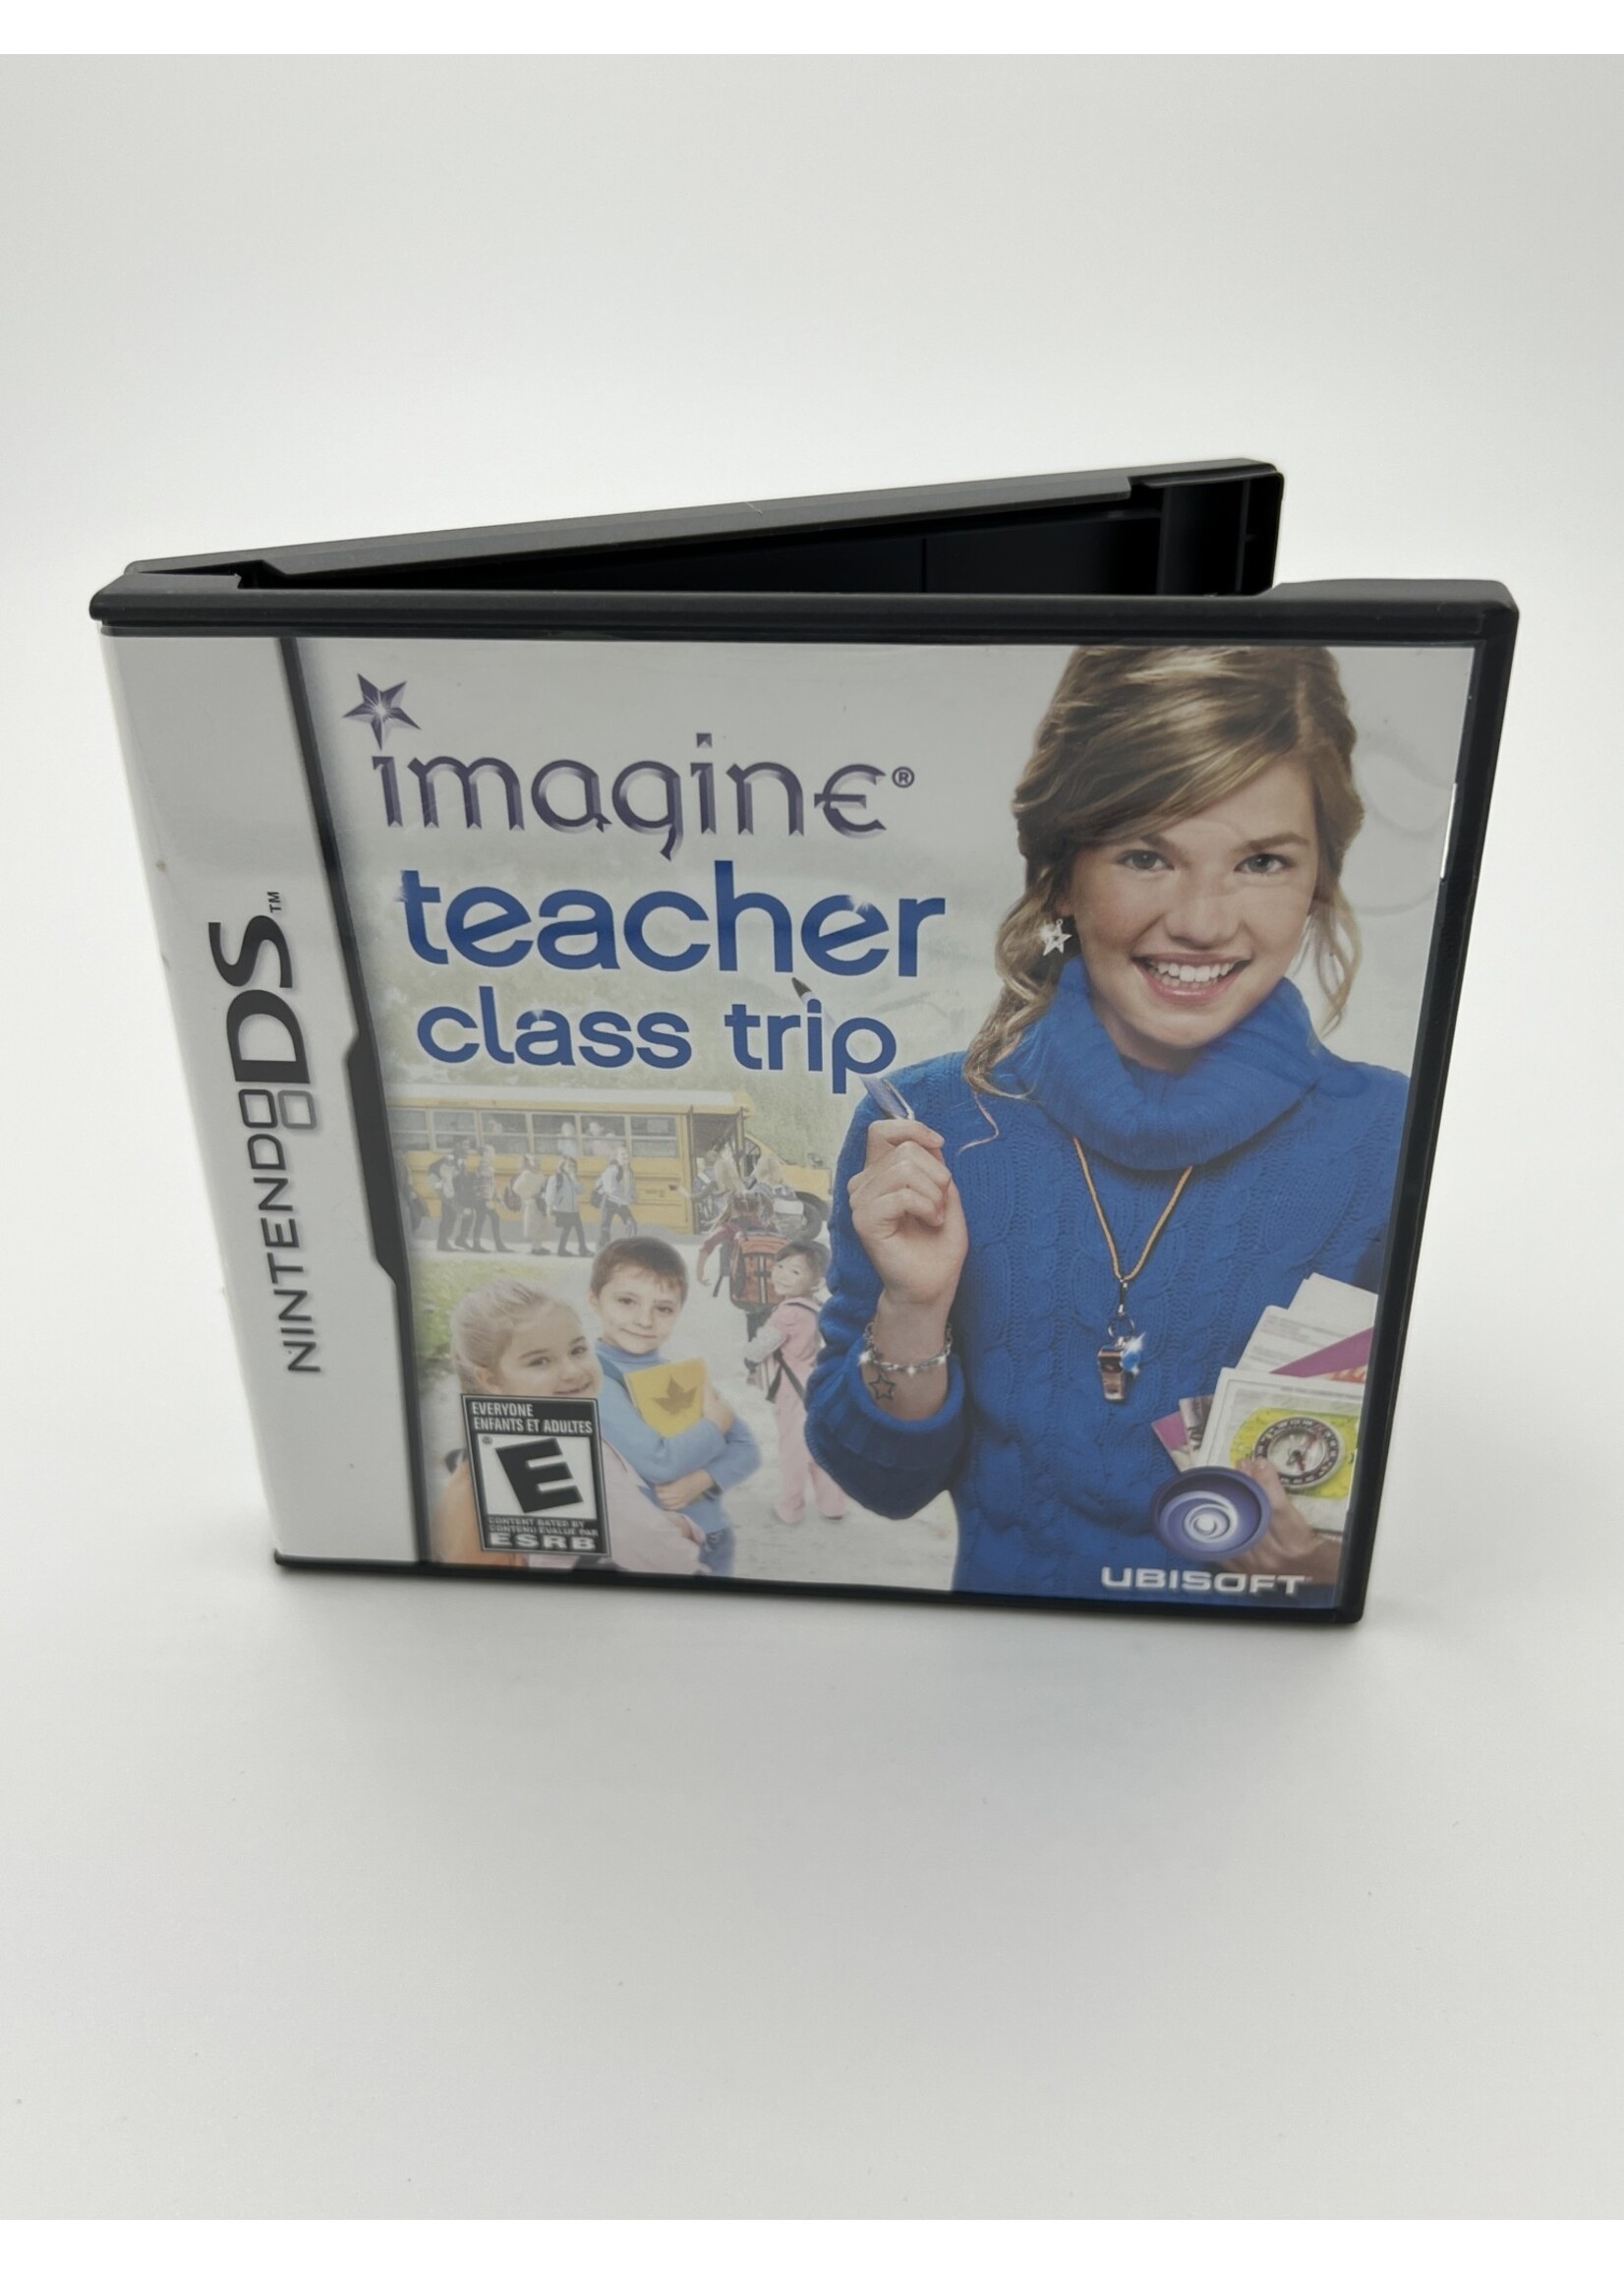 Nintendo   Imagine Teacher Class Trip DS